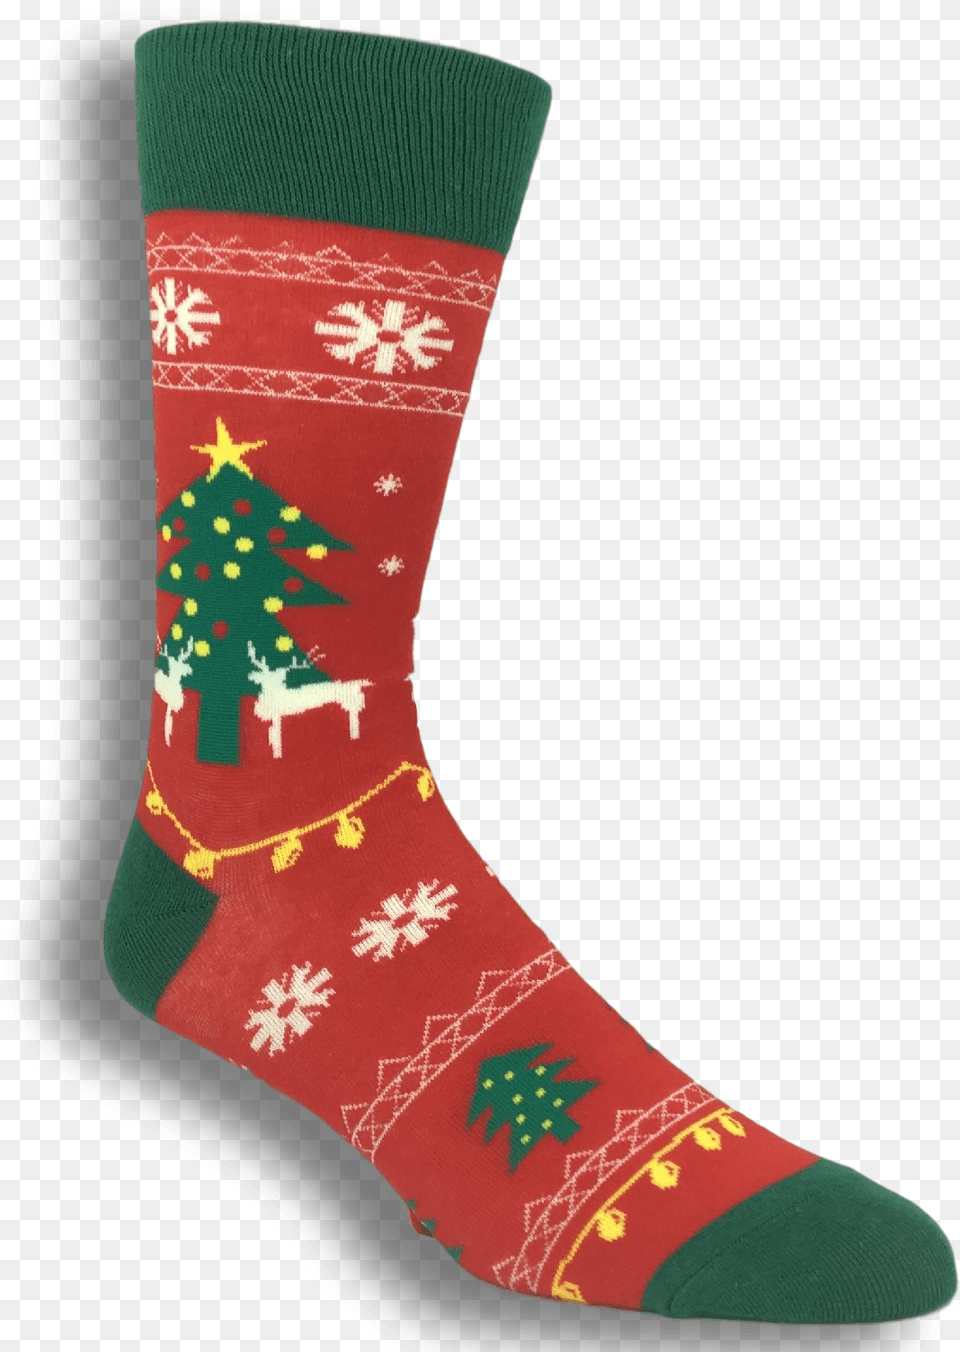 Ugly Christmas Sweater Socks Ugly Christmas Socks, Clothing, Hosiery, Sock, Christmas Decorations Png Image